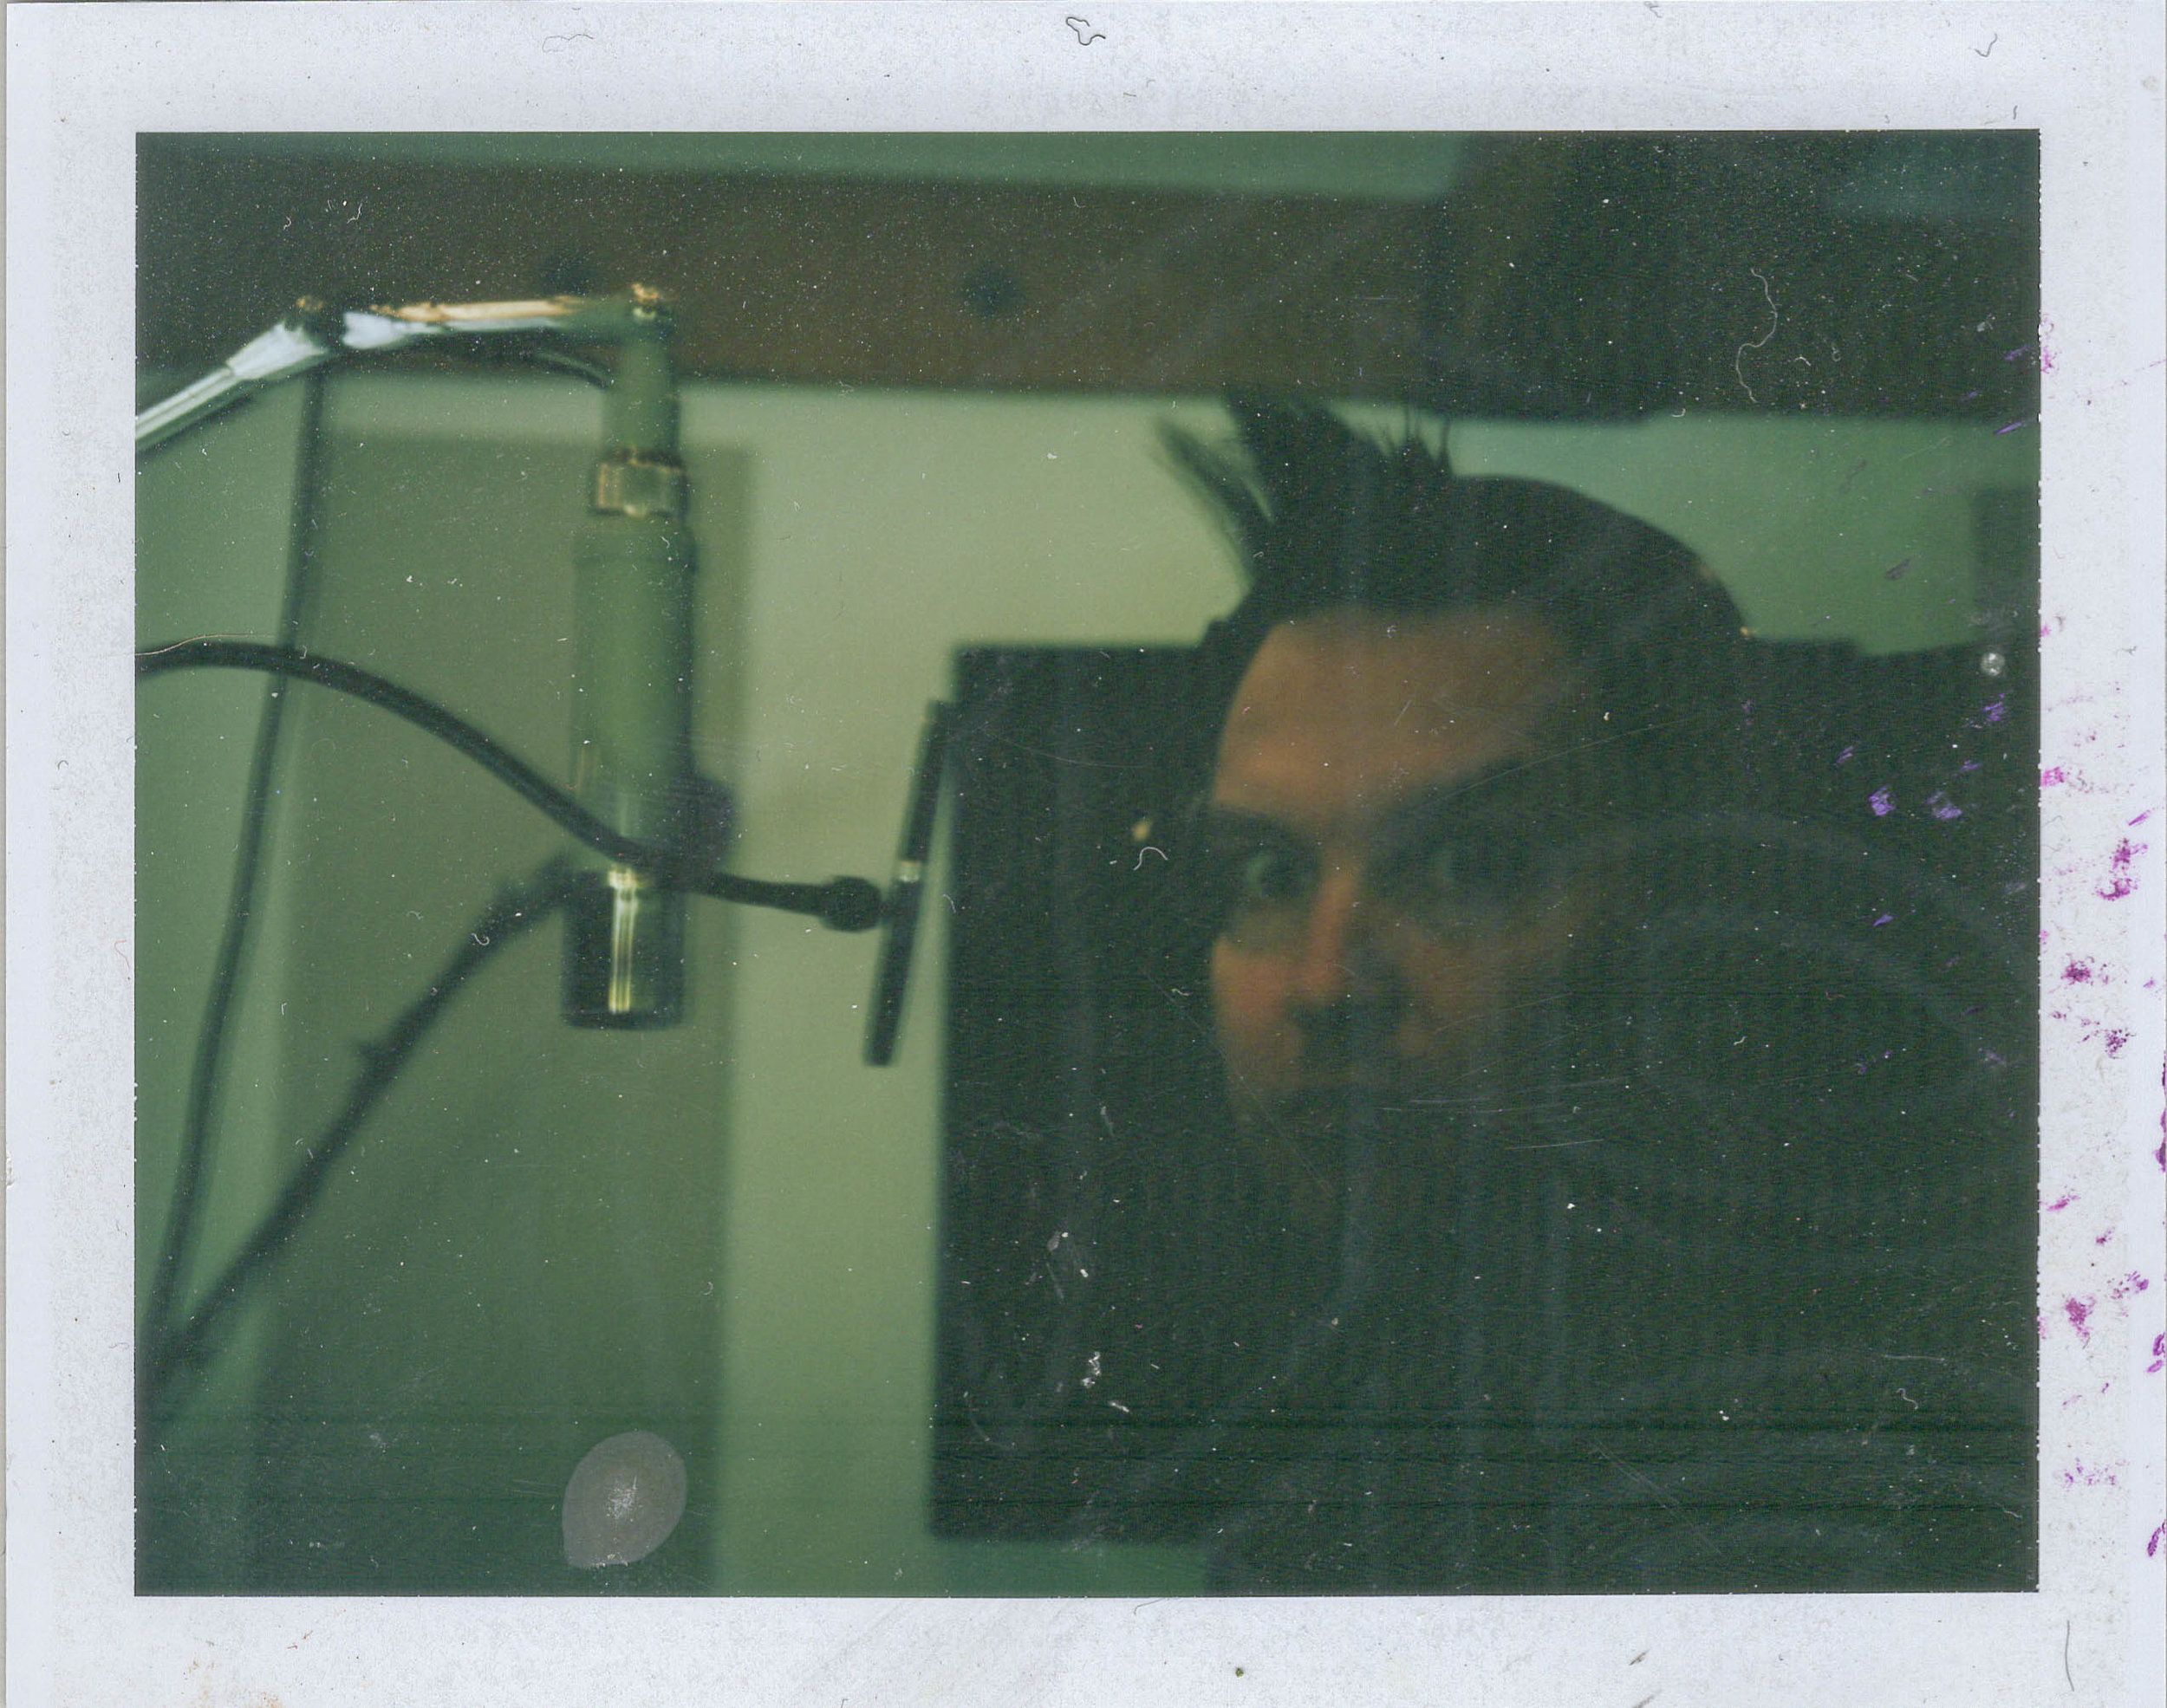  Mark Hoppus of blink 182 recording vocals for “California” Polaroid Land 100: FP100C 